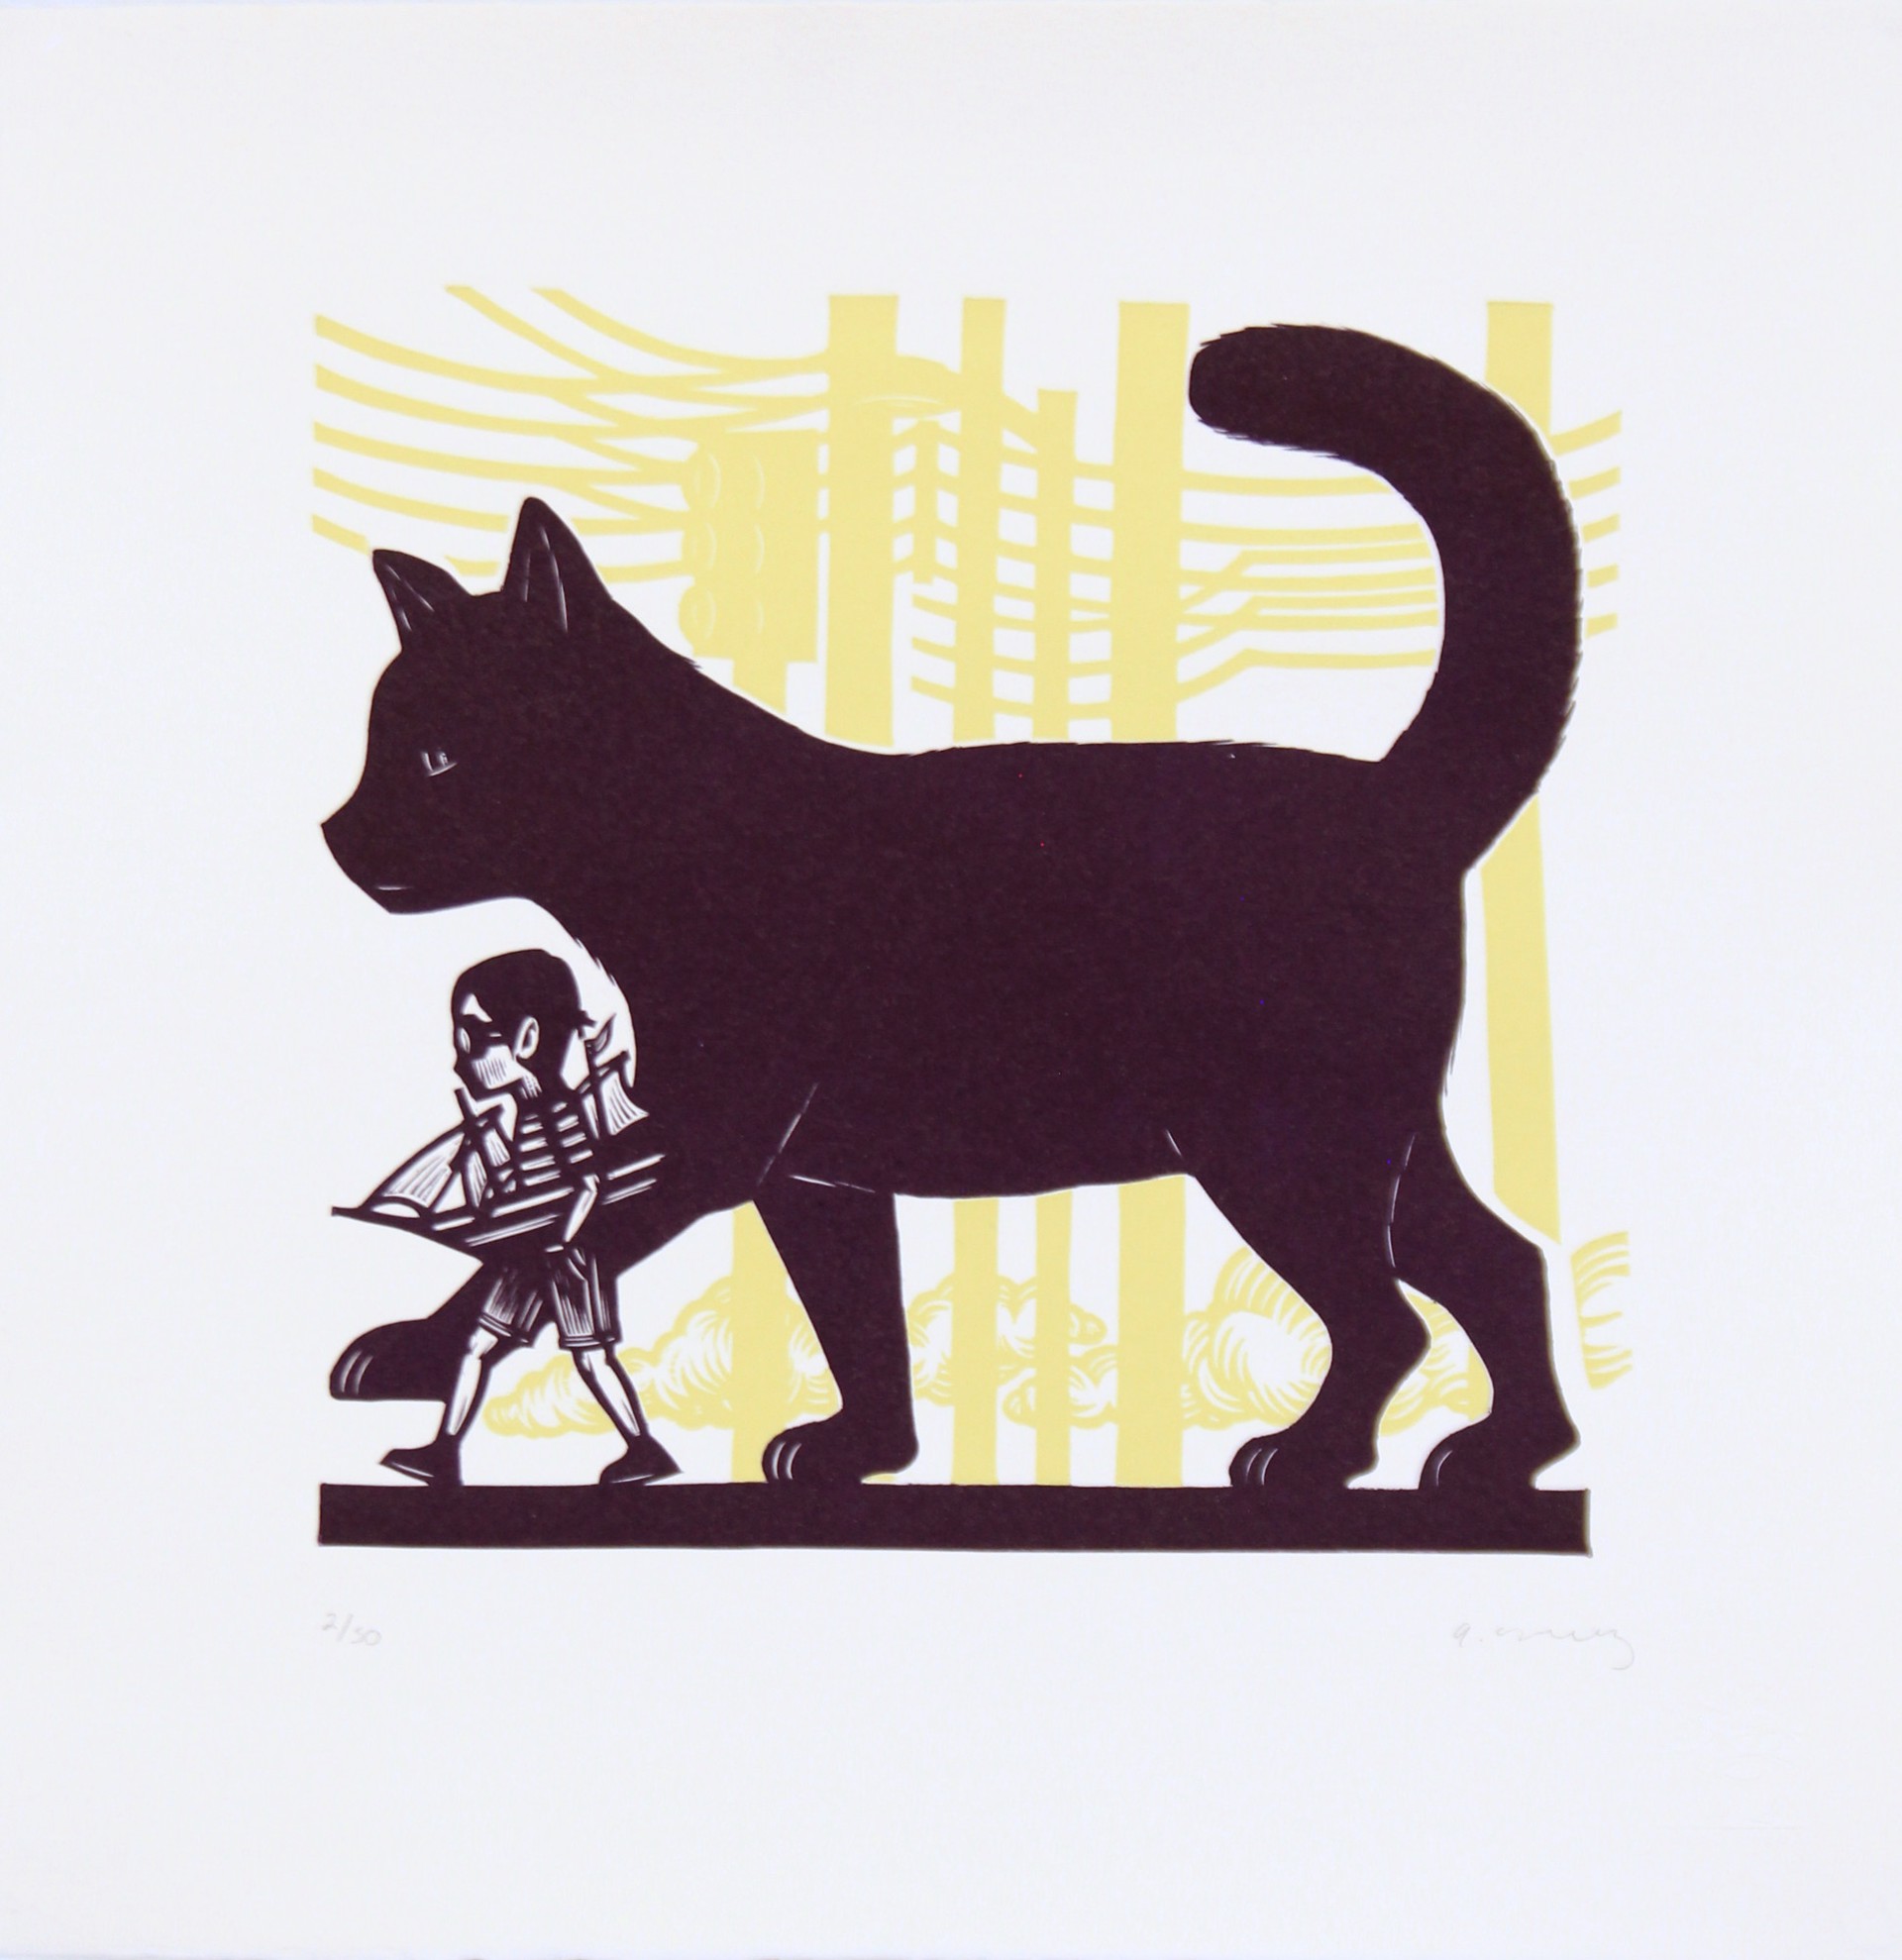 Niño y Gato by Alberto Cruz